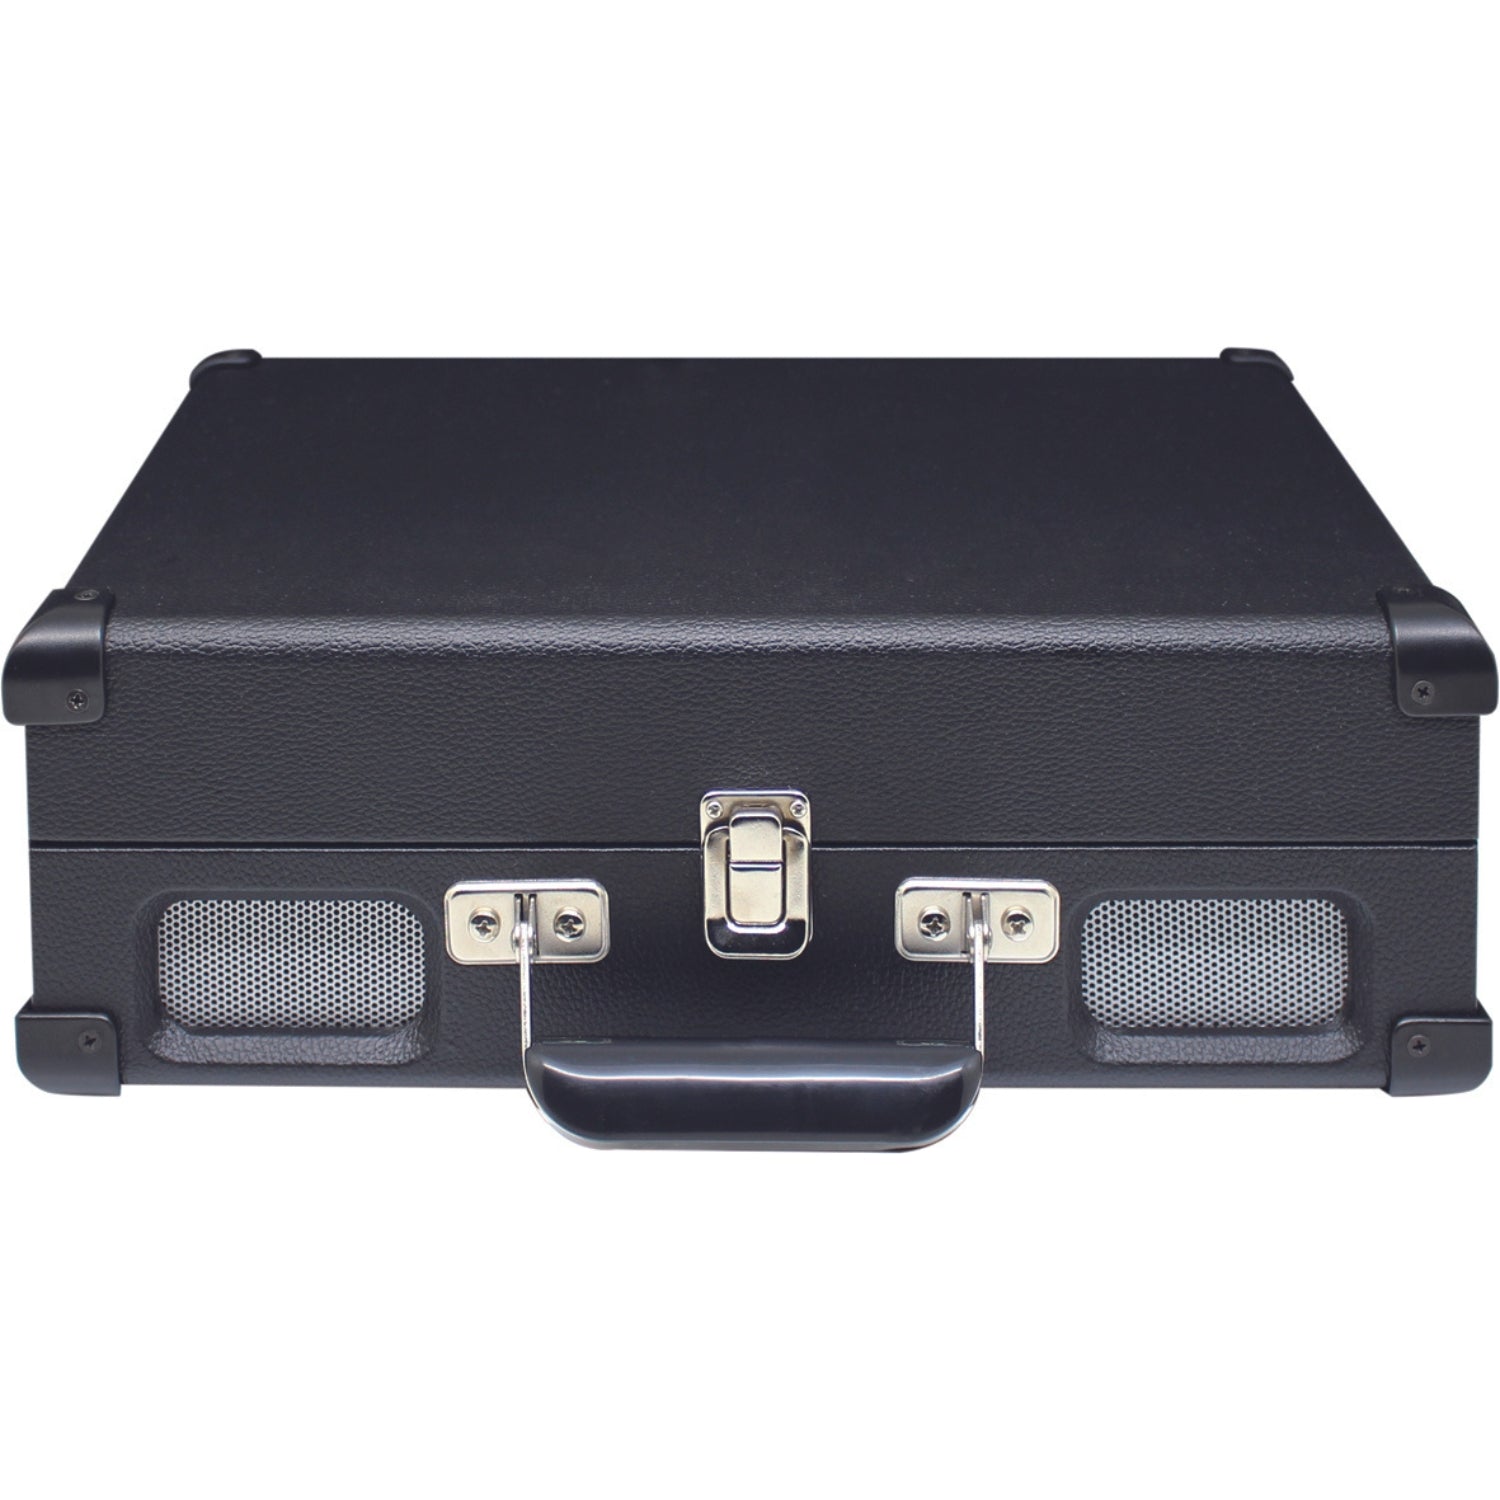 Soundmaster PL580 schwarz Nostalgie Koffer Plattenspieler mit Kopfhöreranschluss